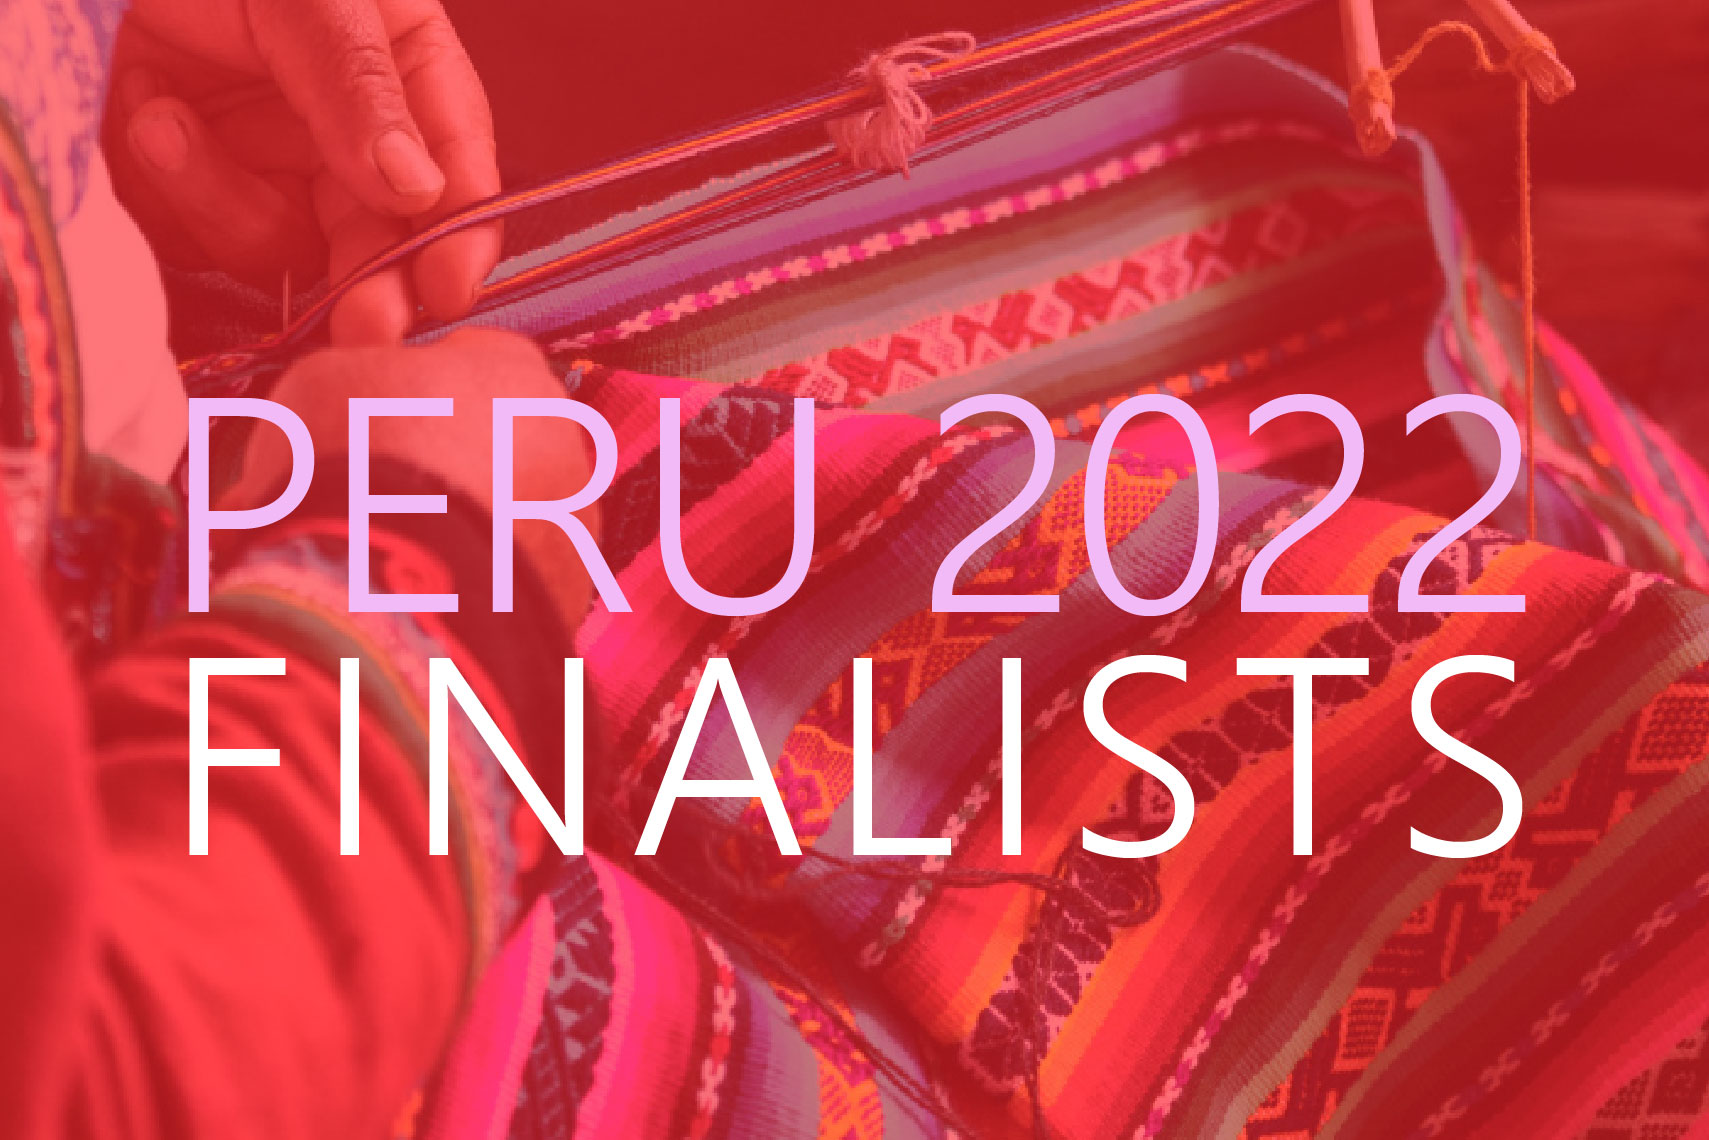 Peru Teaser Finalists weaving